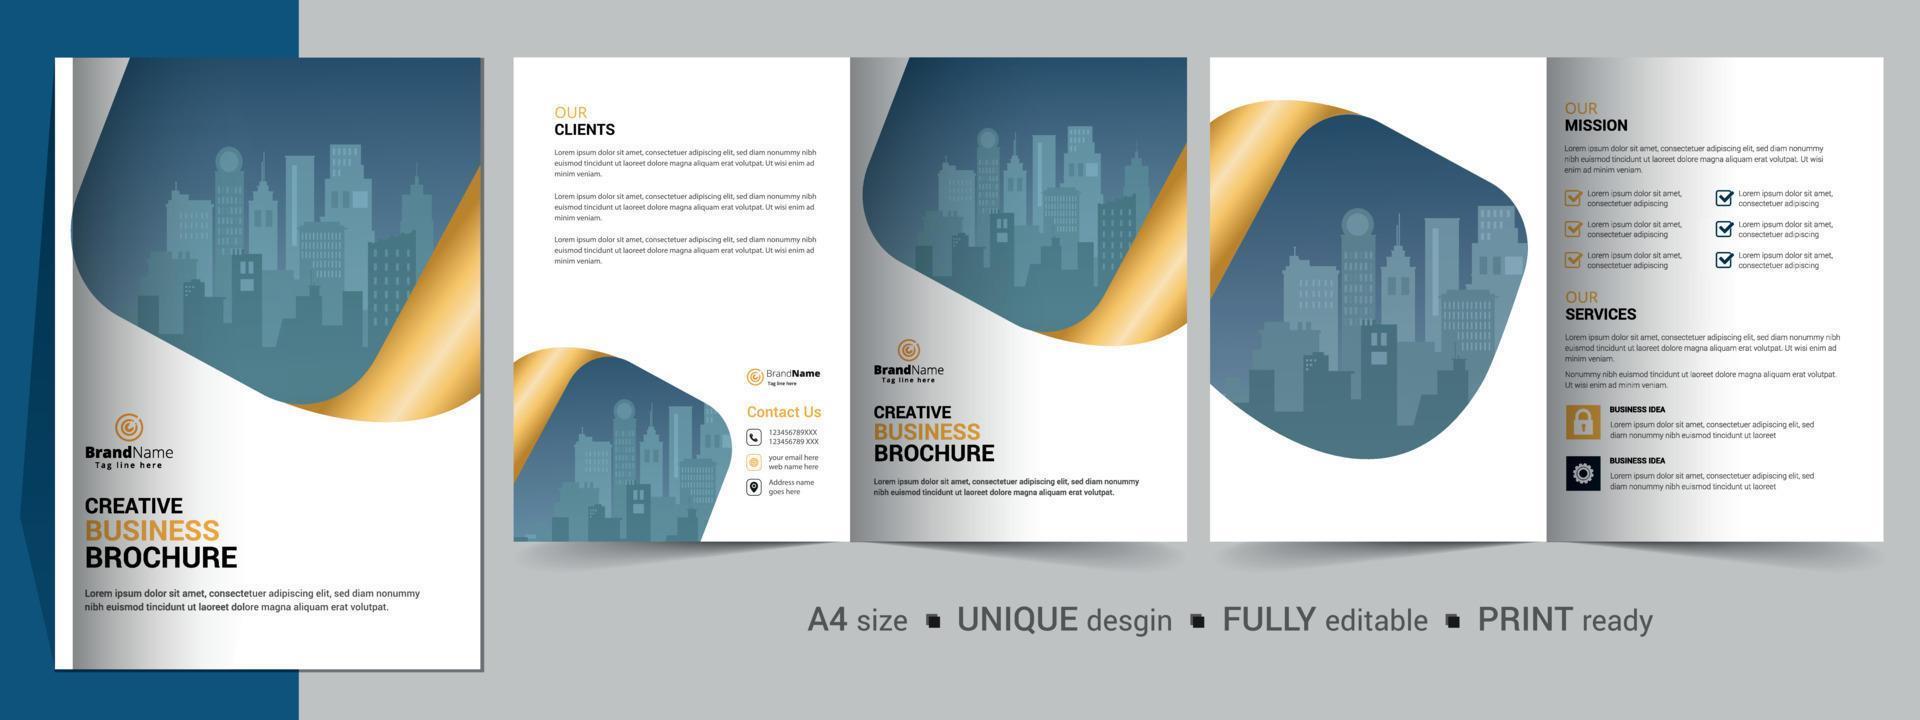 modello di progettazione di brochure bifold per la tua azienda, azienda, affari, pubblicità, marketing, agenzia e attività su Internet. vettore